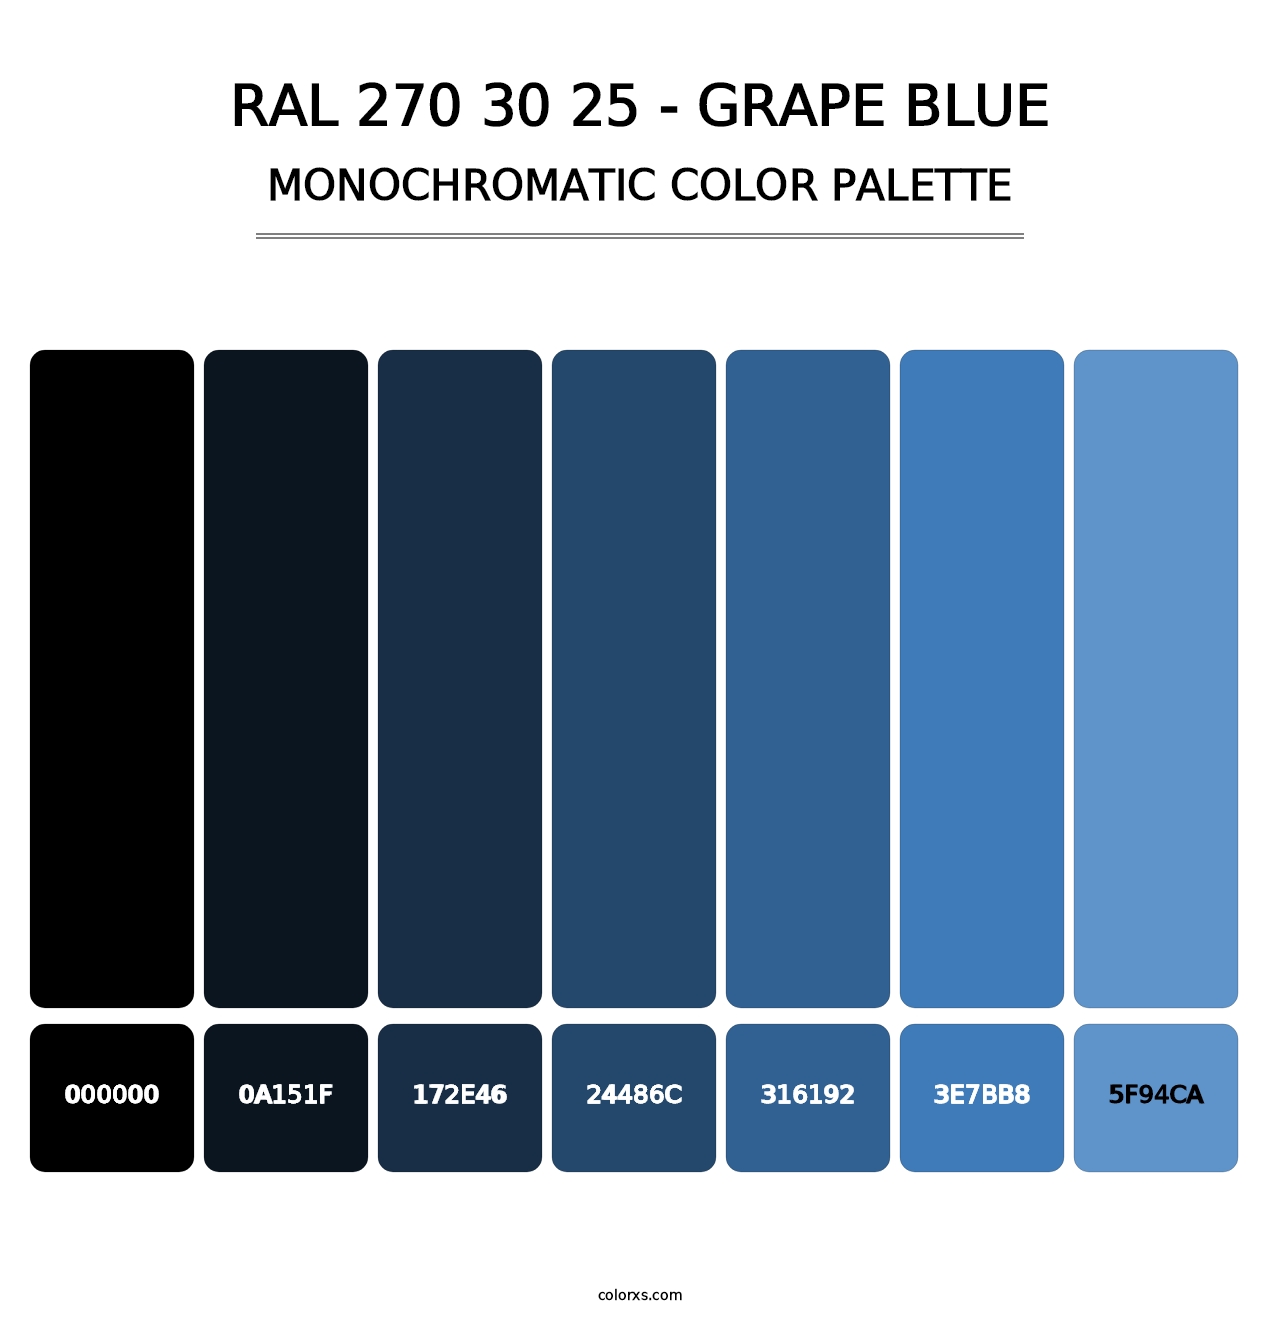 RAL 270 30 25 - Grape Blue - Monochromatic Color Palette